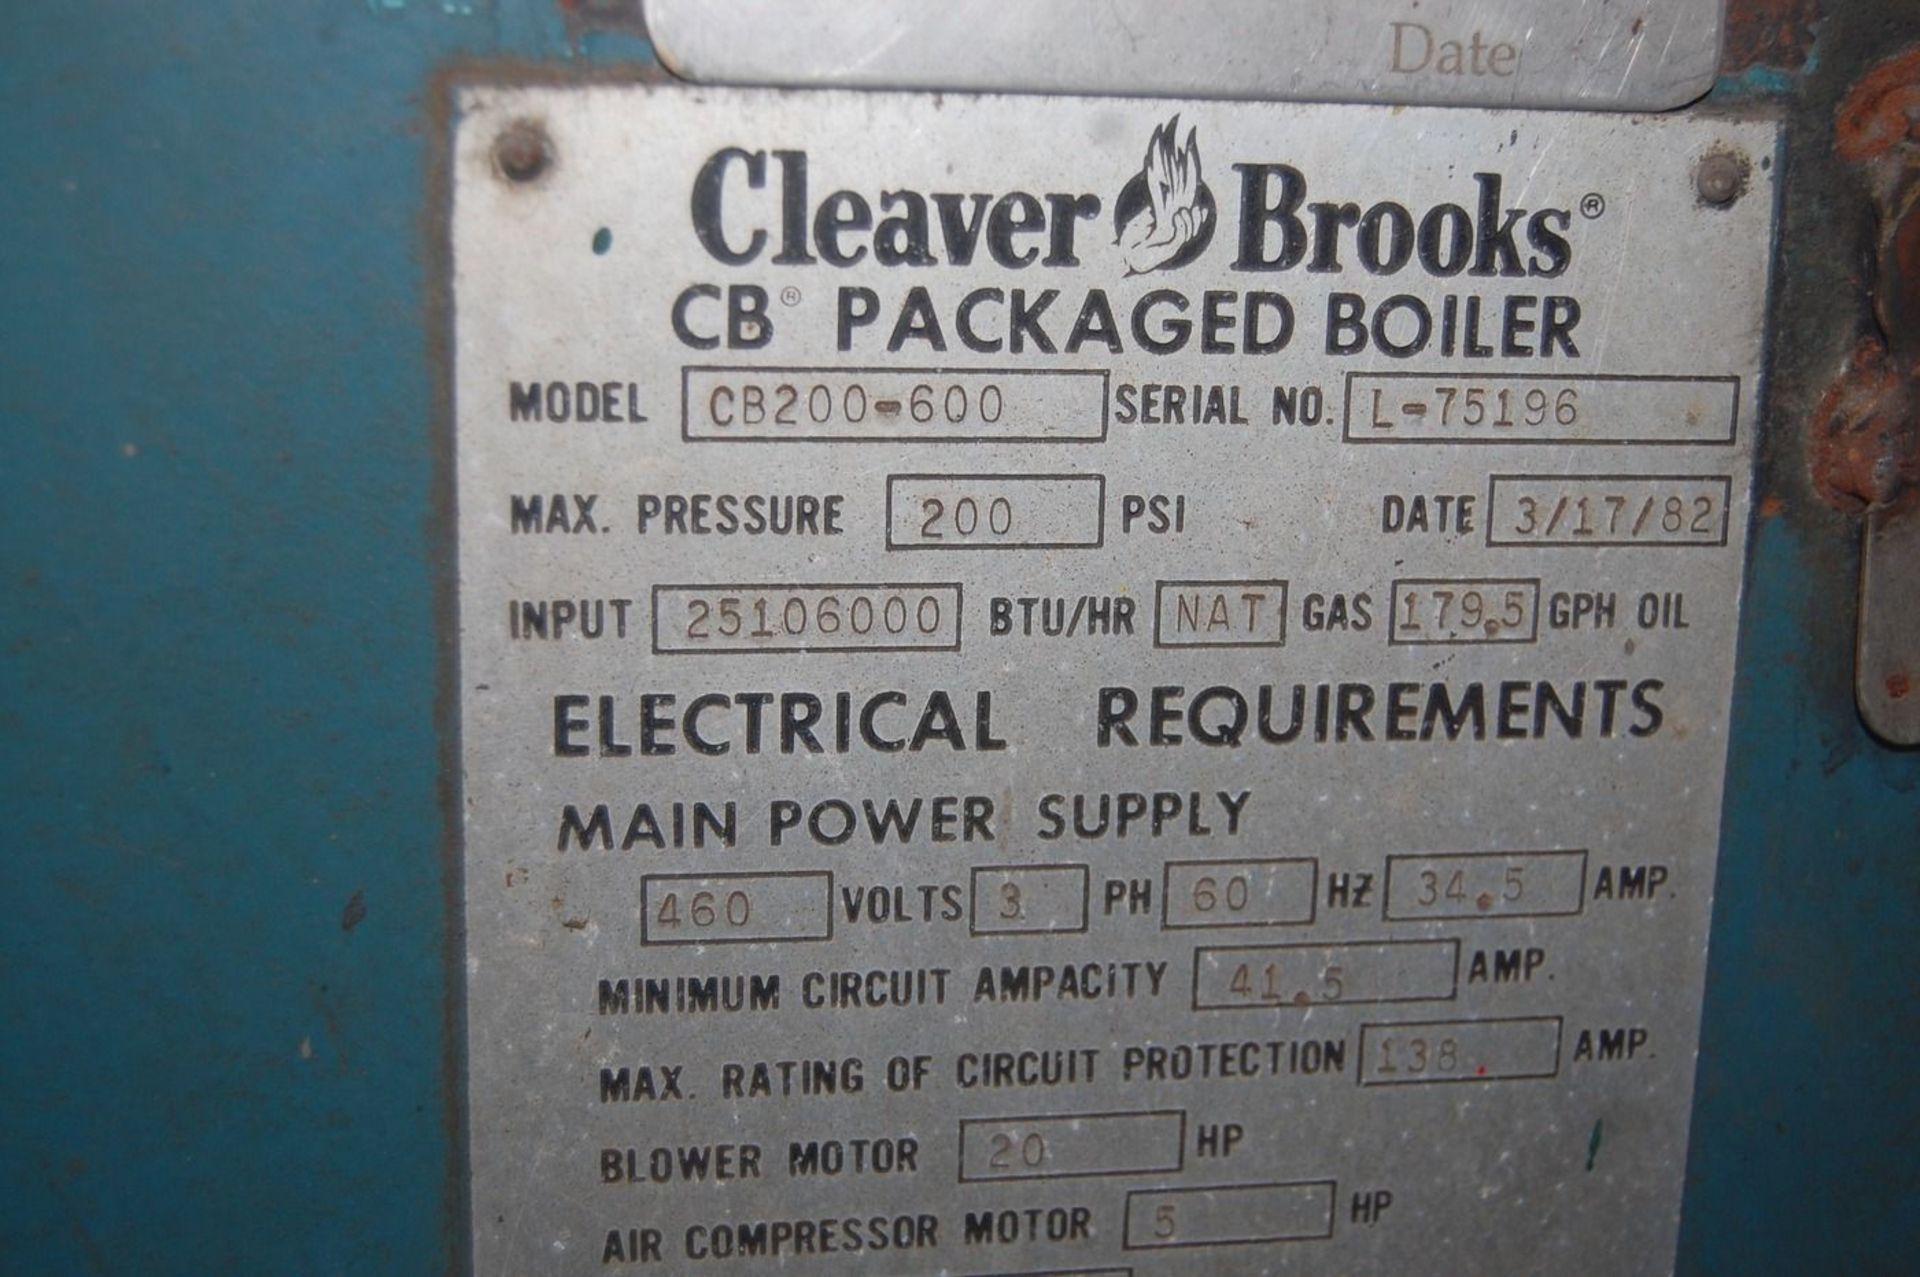 Cleaver Brooks Model CB200-600 Package Boiler - Image 4 of 8